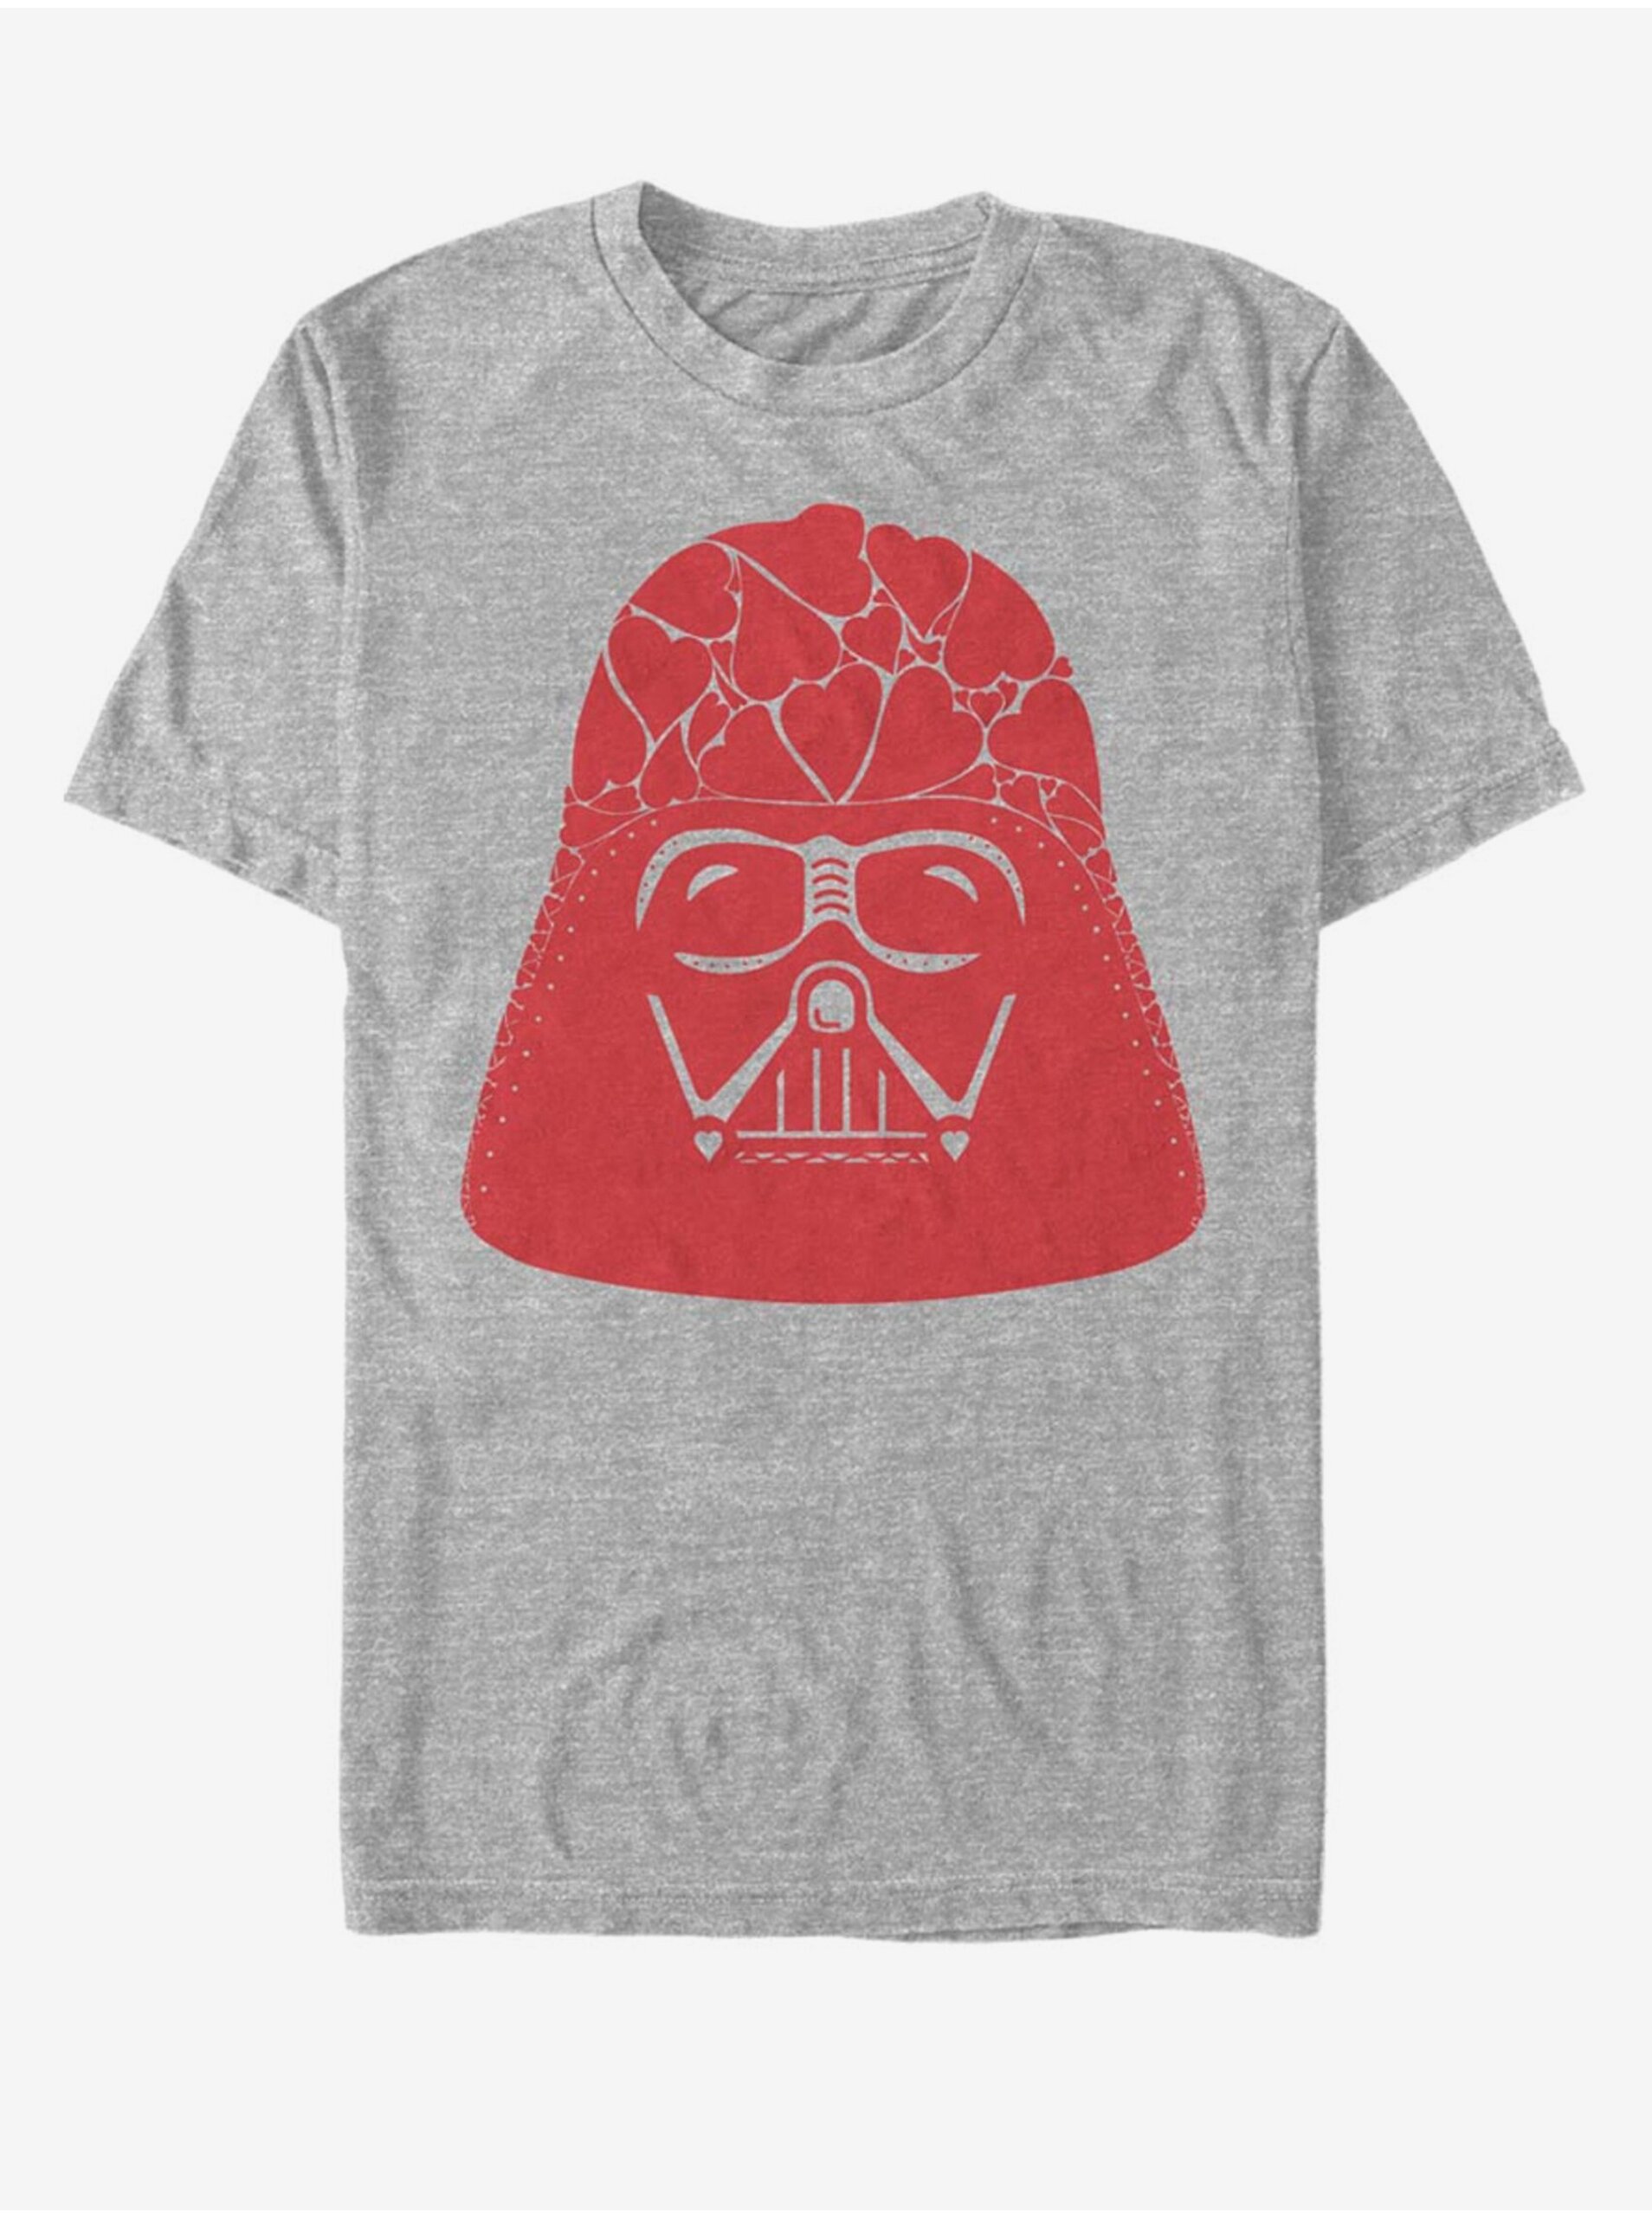 Lacno Svetlosivé unisex tričko Star Wars Vader Heart Helmet